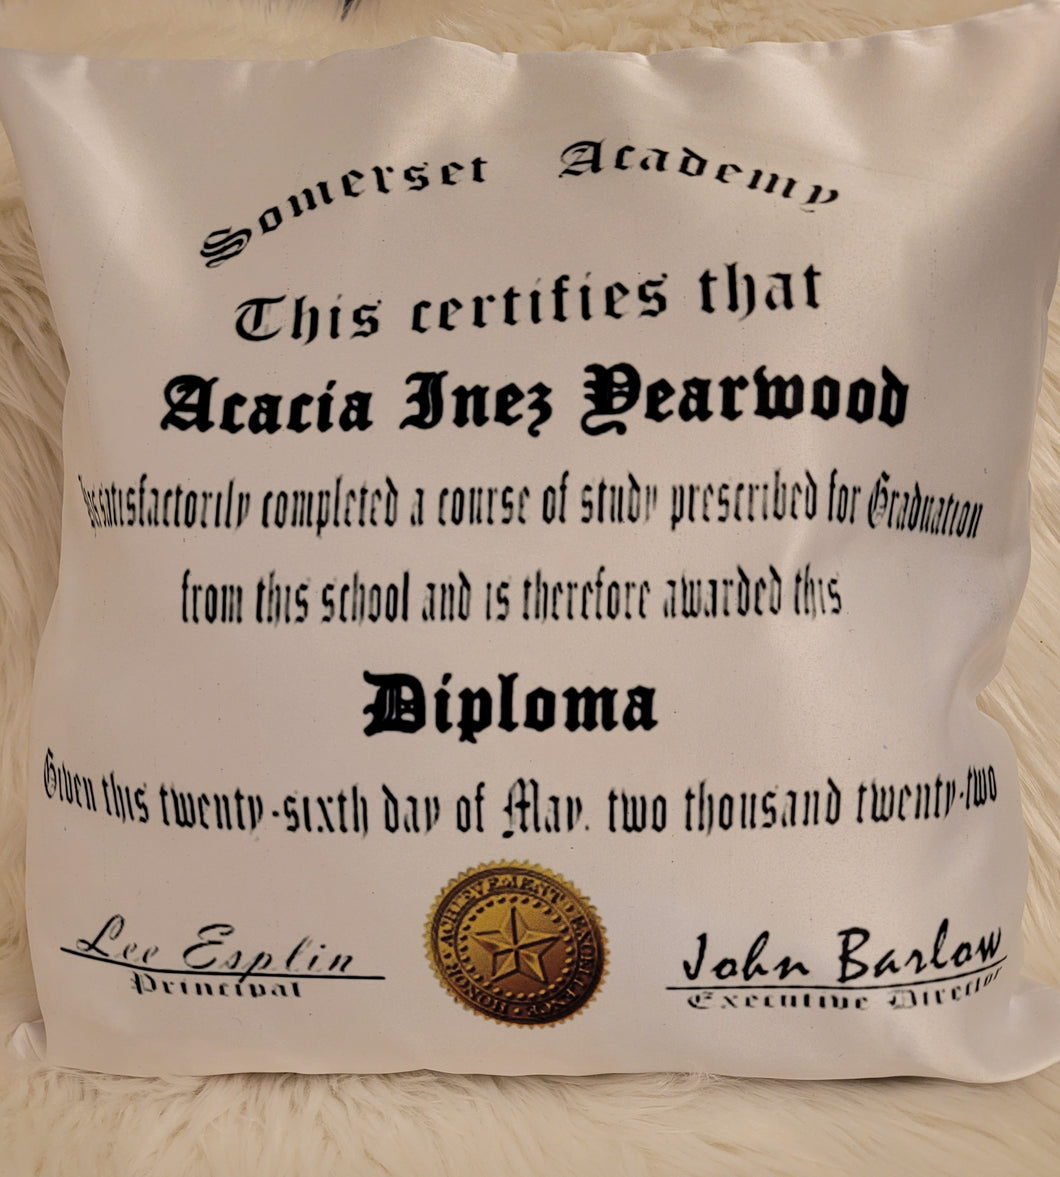 Diploma Pillow